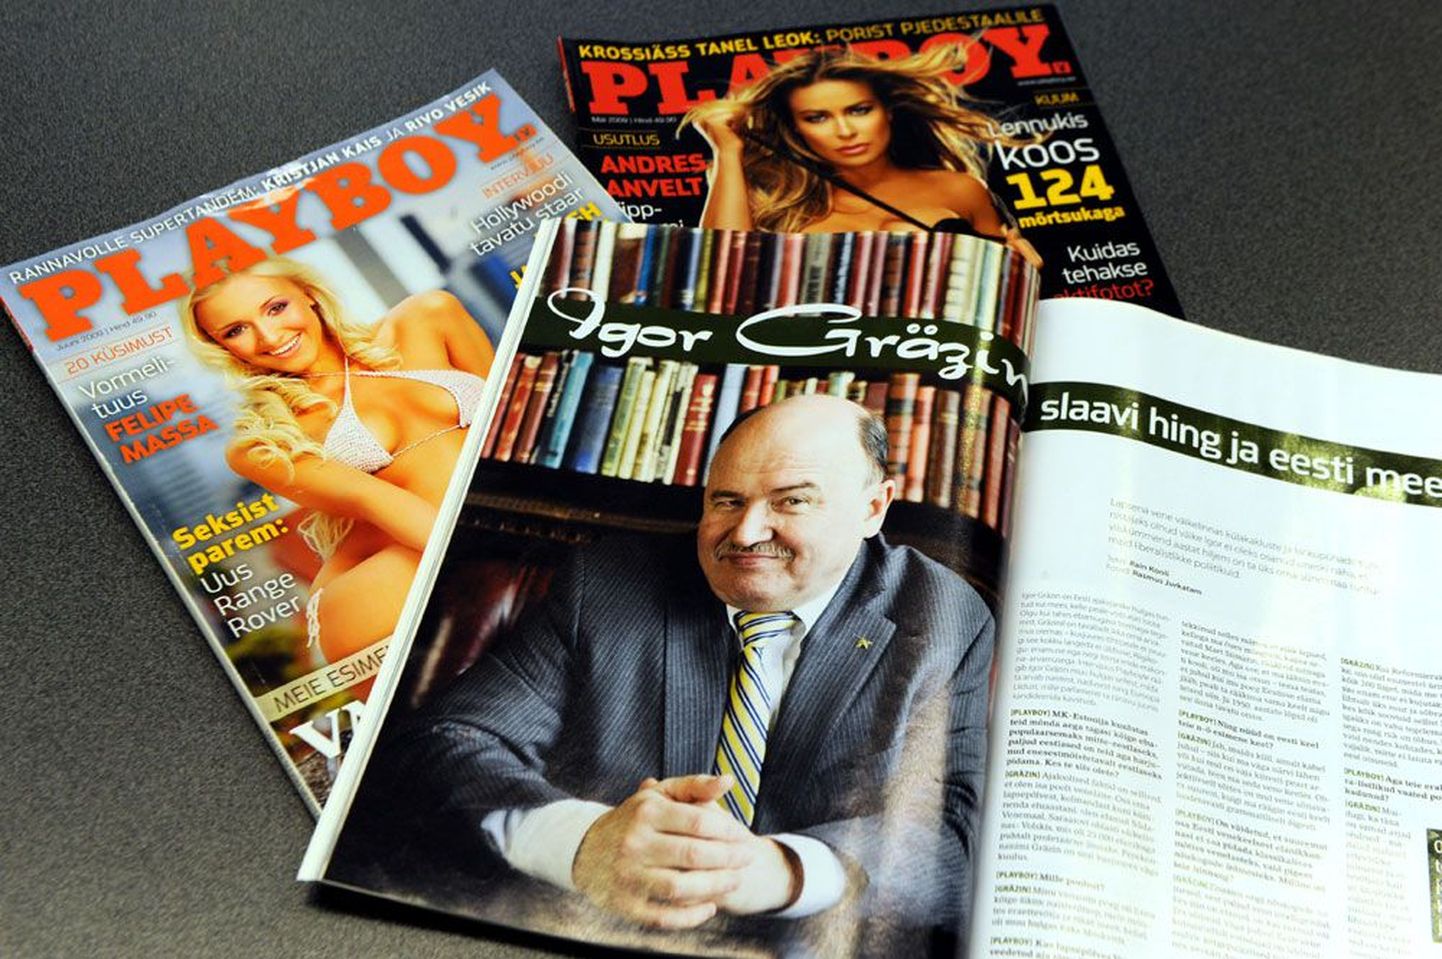 Gräzin ei hakka keerutama ja puudumist kõhuvaluga vabandama. «Playboy on filosoofilises mõttes maailma üks    kõige olulisemaid ajakirju!» on riigikogu liige veendunud.